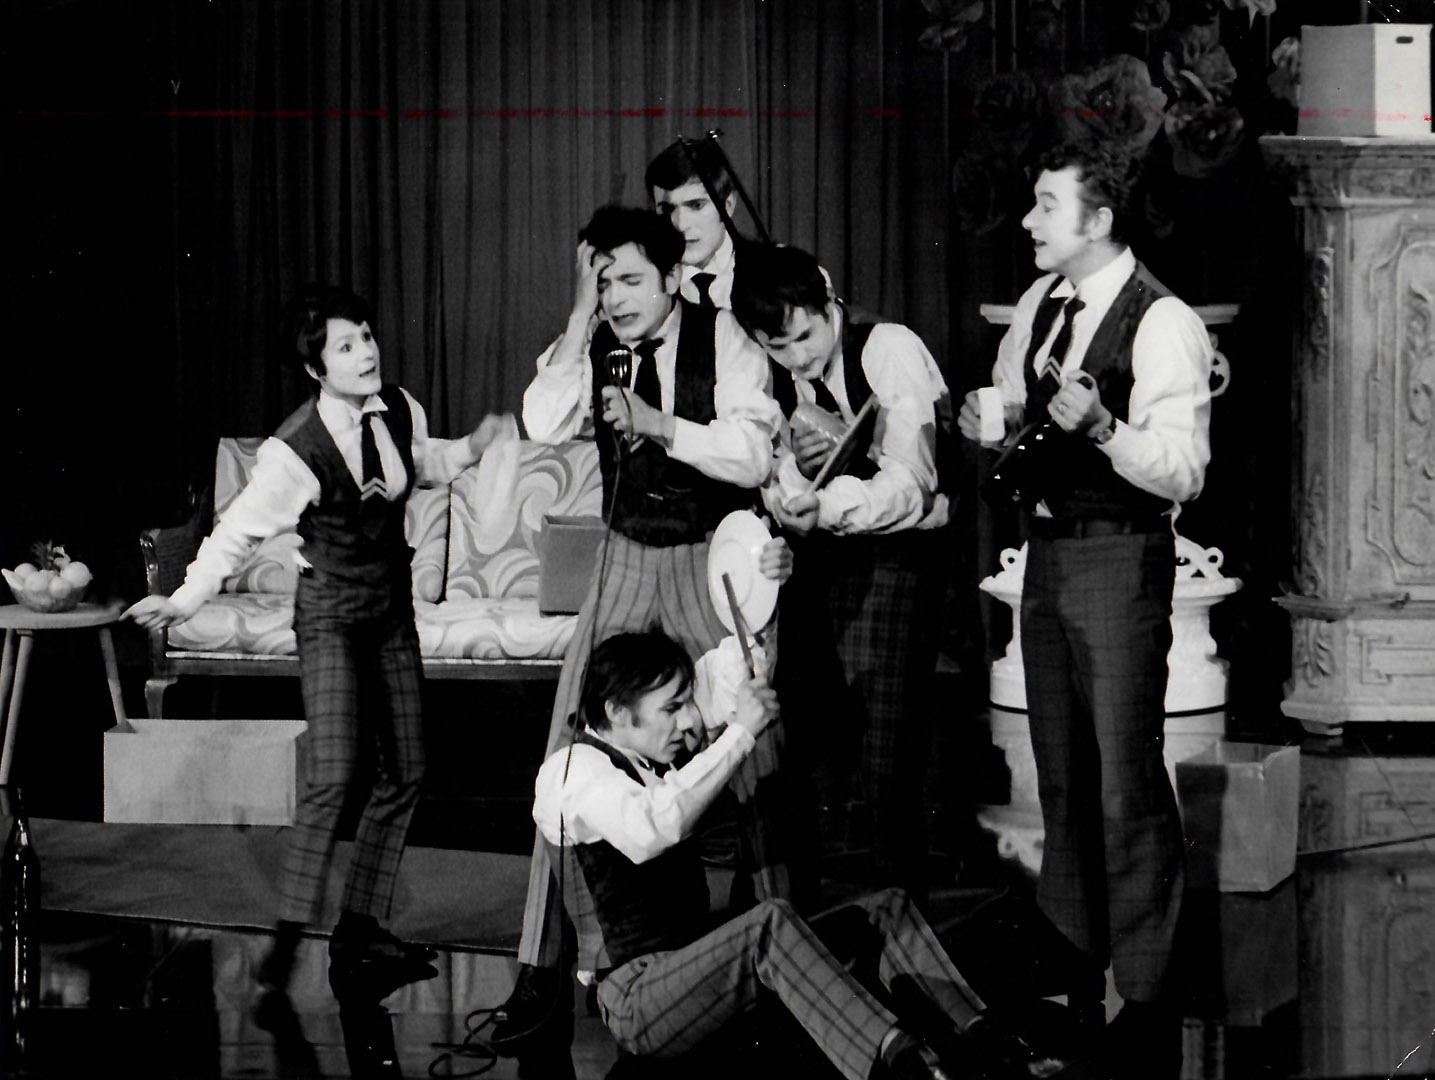 Kasper. Fotos oben: Andreas Etter. unten: Kasper, Aufführung von 1968. Foto: AZ-Archiv